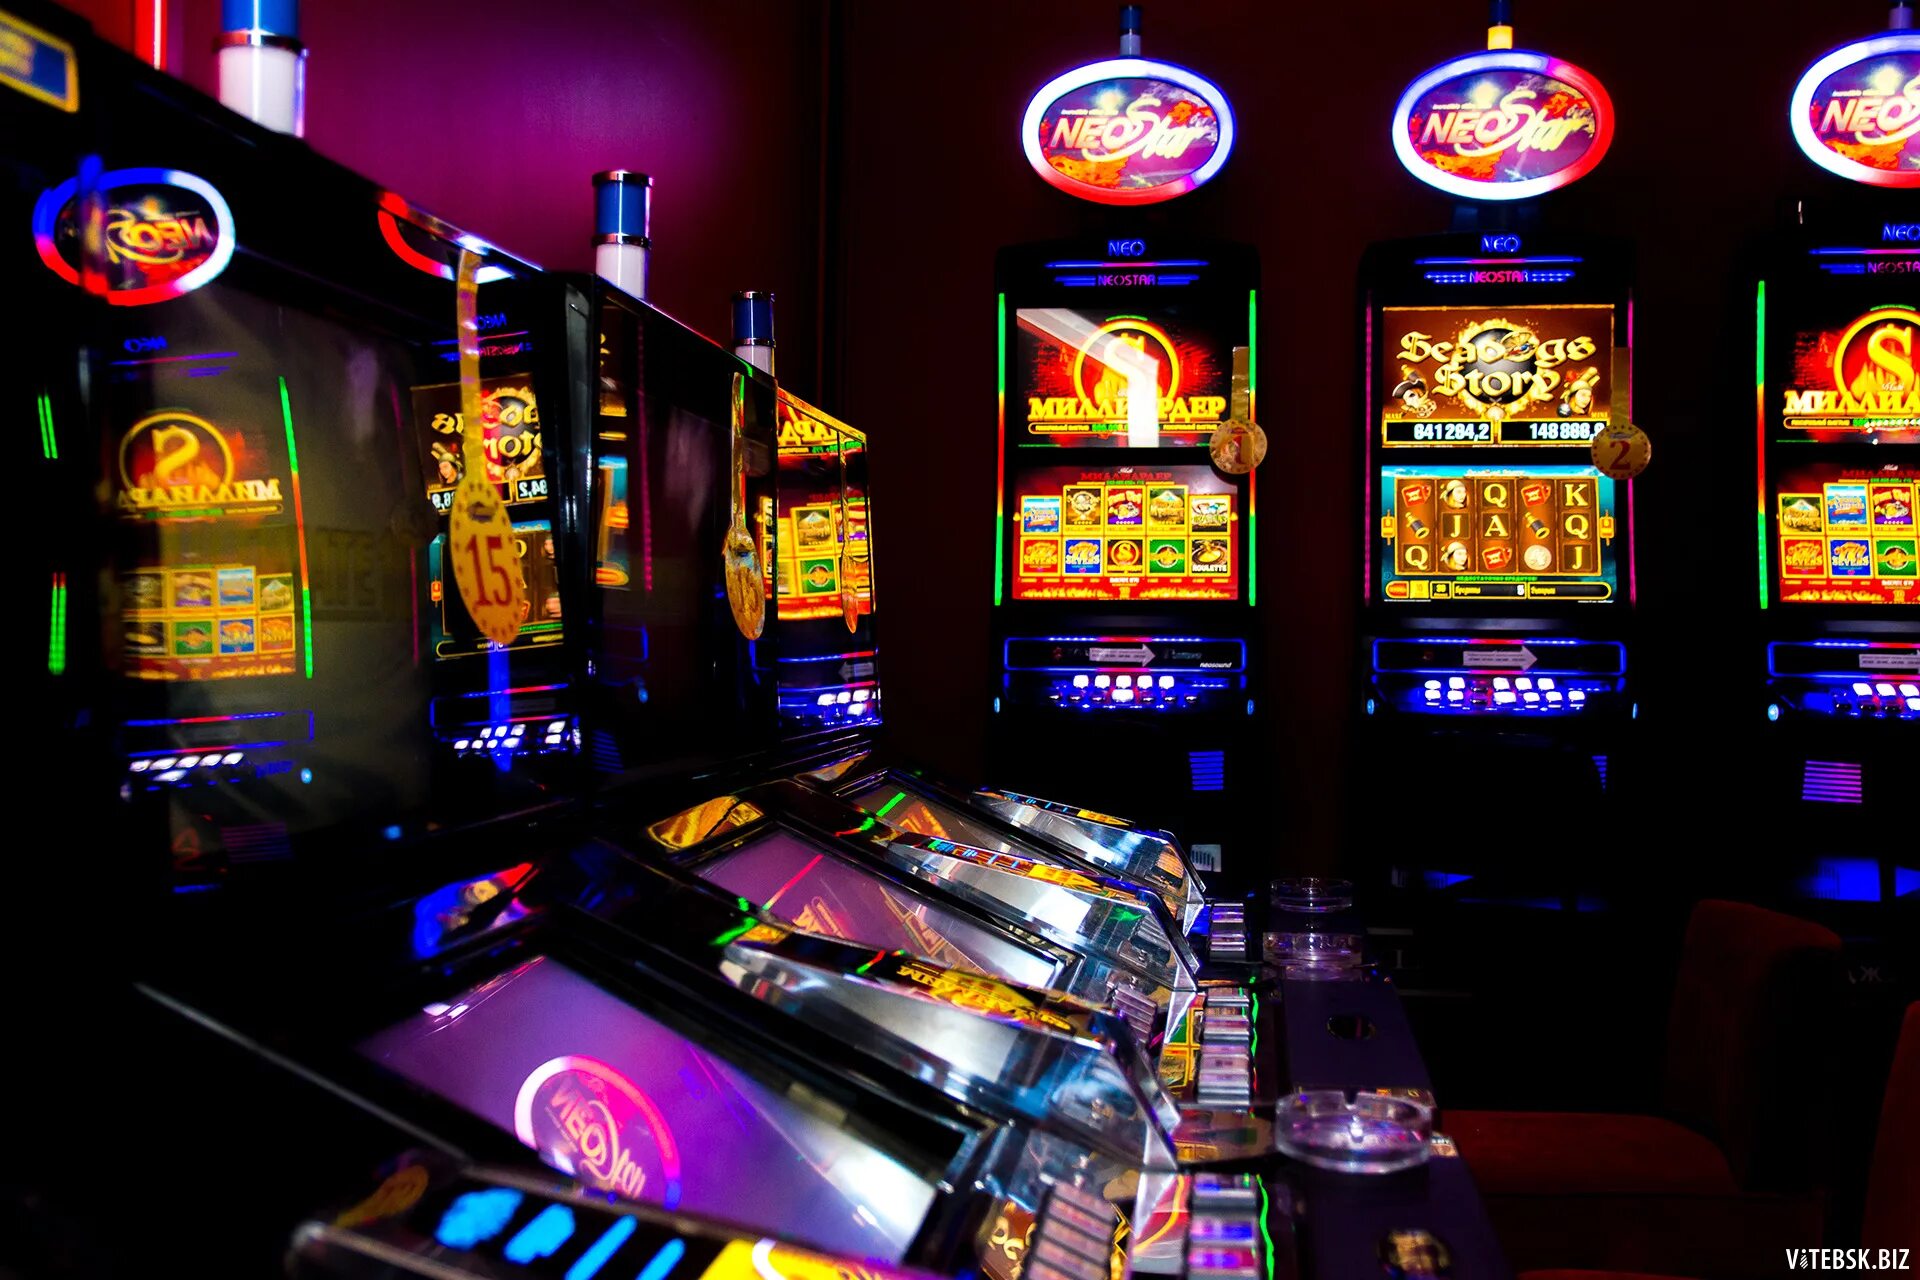 Слотосфера игровые автоматы казино. Игровой зал 777 зал популярных игровых аппаратов. Азартные игровые автоматы гаминатор. Название игровых автоматов.